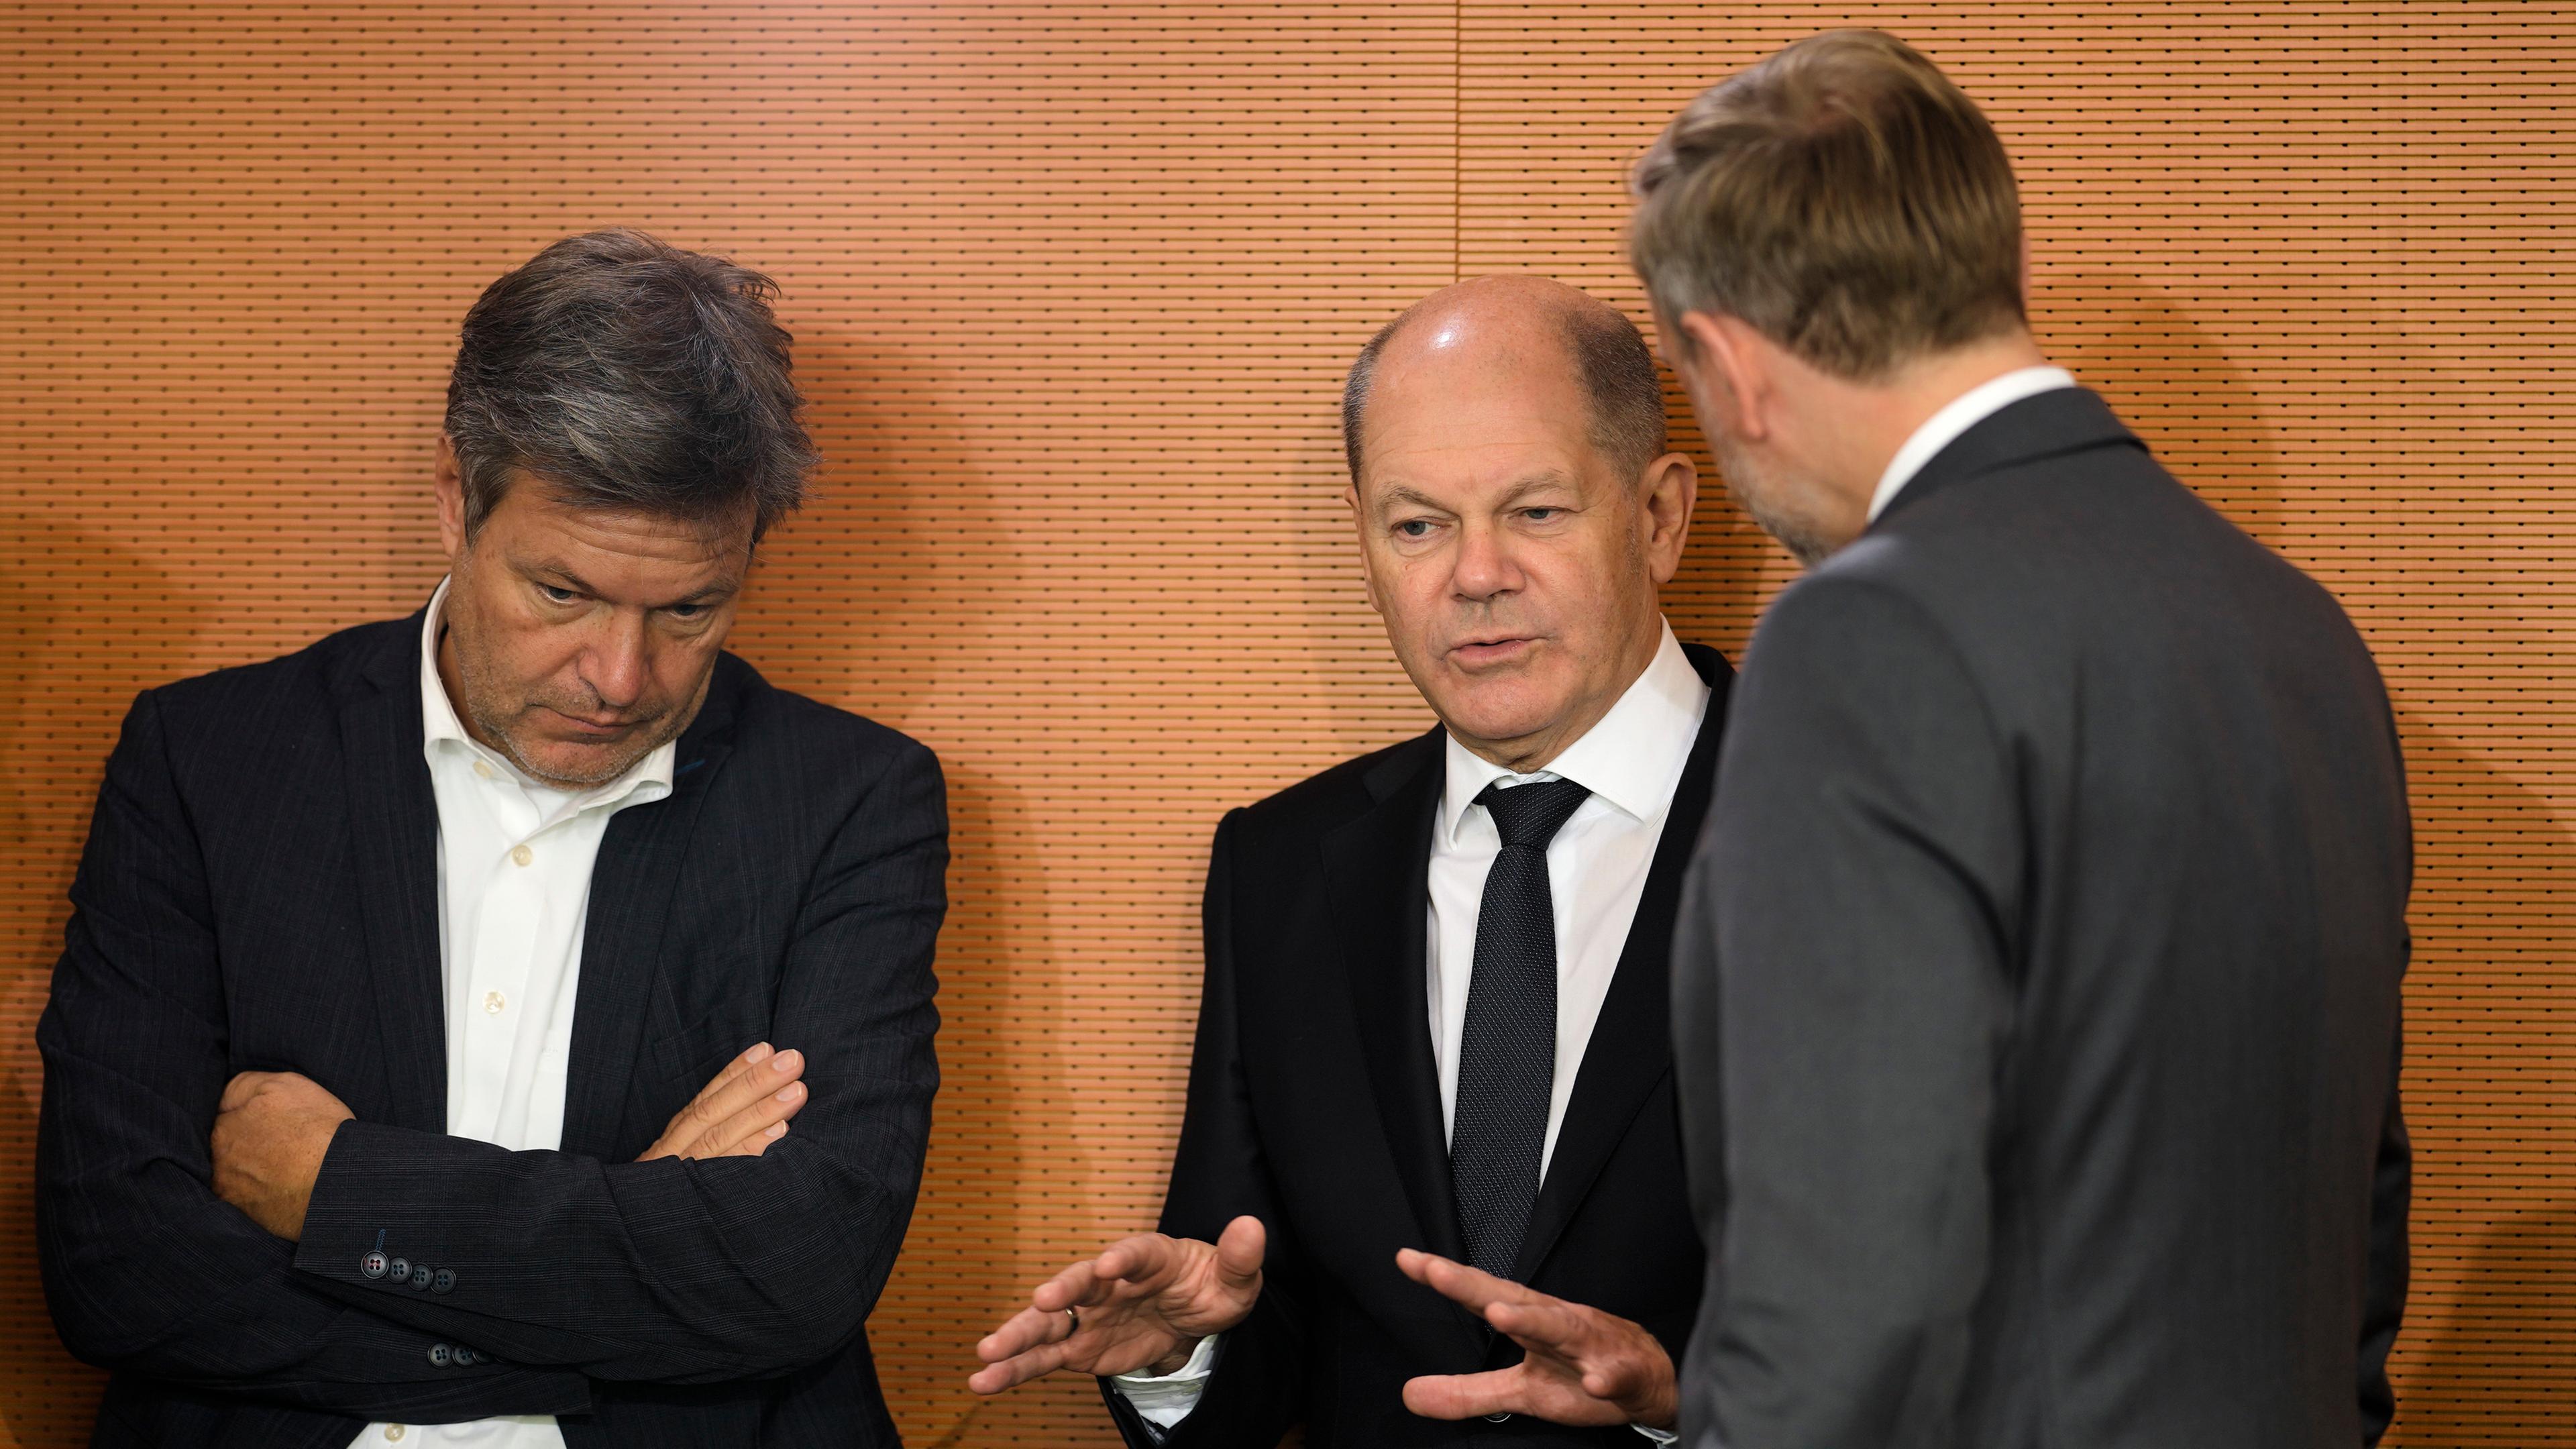 Bundeskanzler Scholz spricht mit Wirtschaftsminister Habeck und Finanzminister Lindner während einer Kabinettssitzung